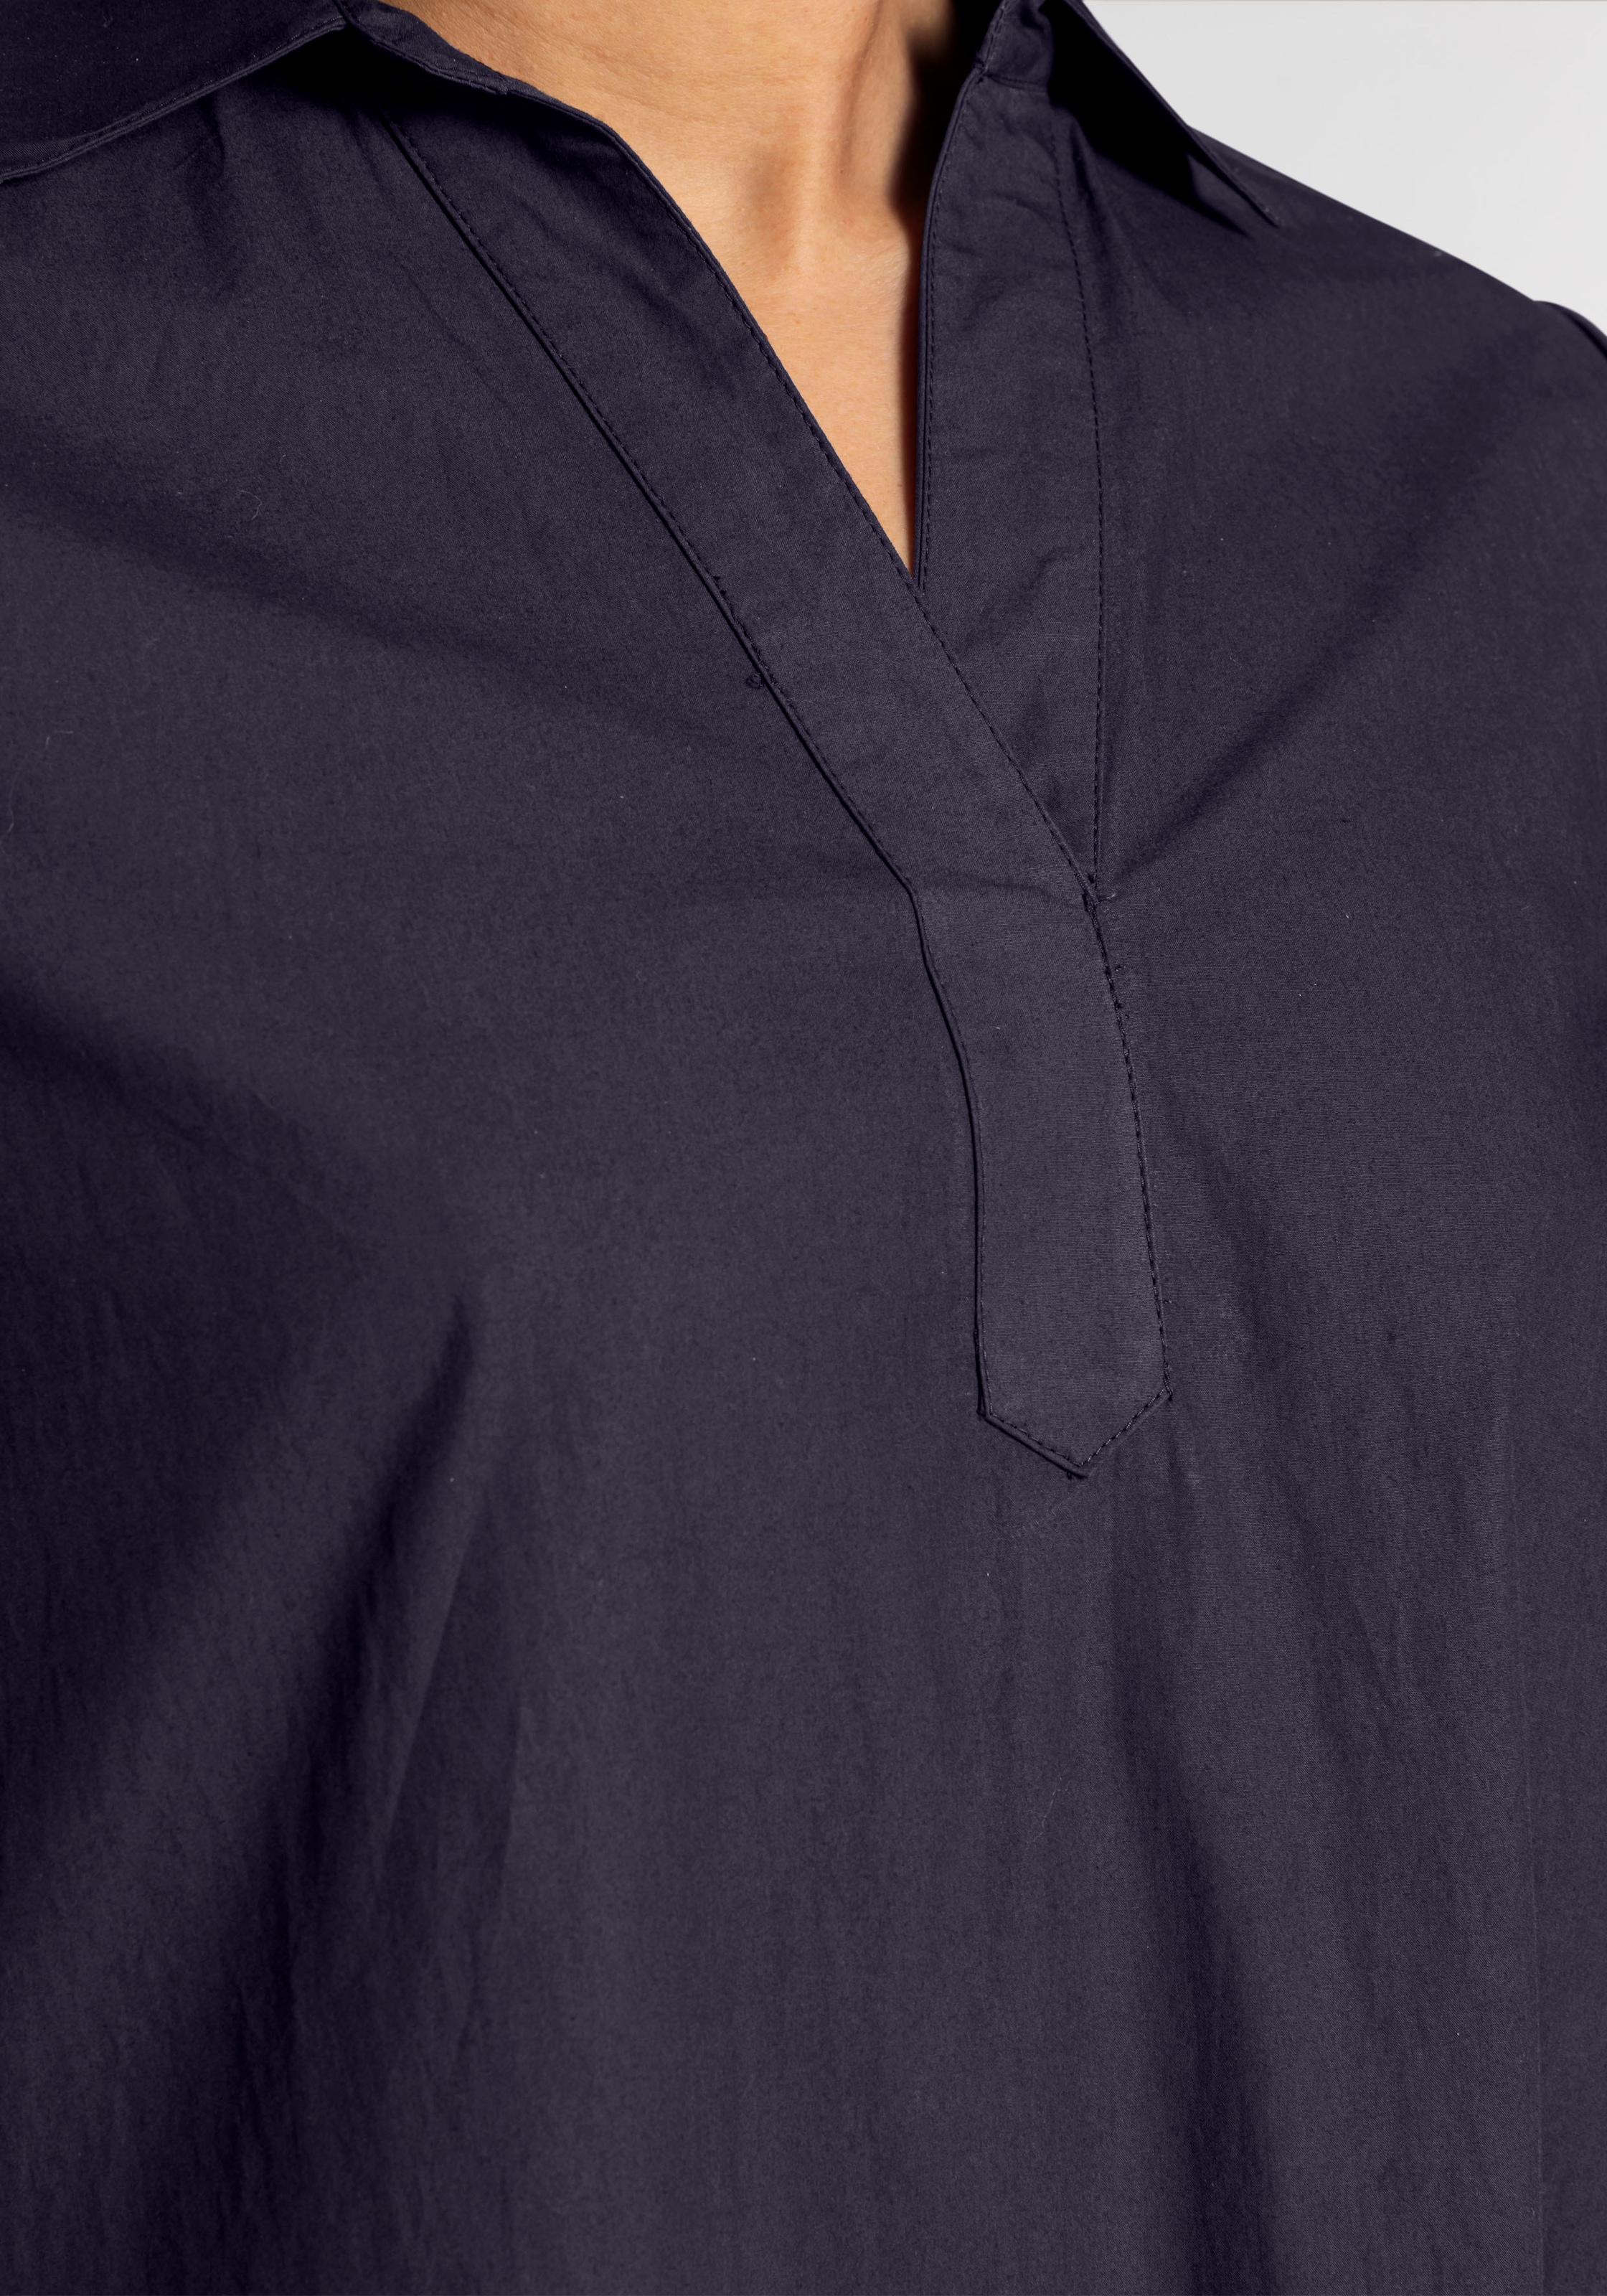 Boysen's Blusenkleid, in A-Linie aus hochwertiger Baumwolle - NEUE KOLLEKTION